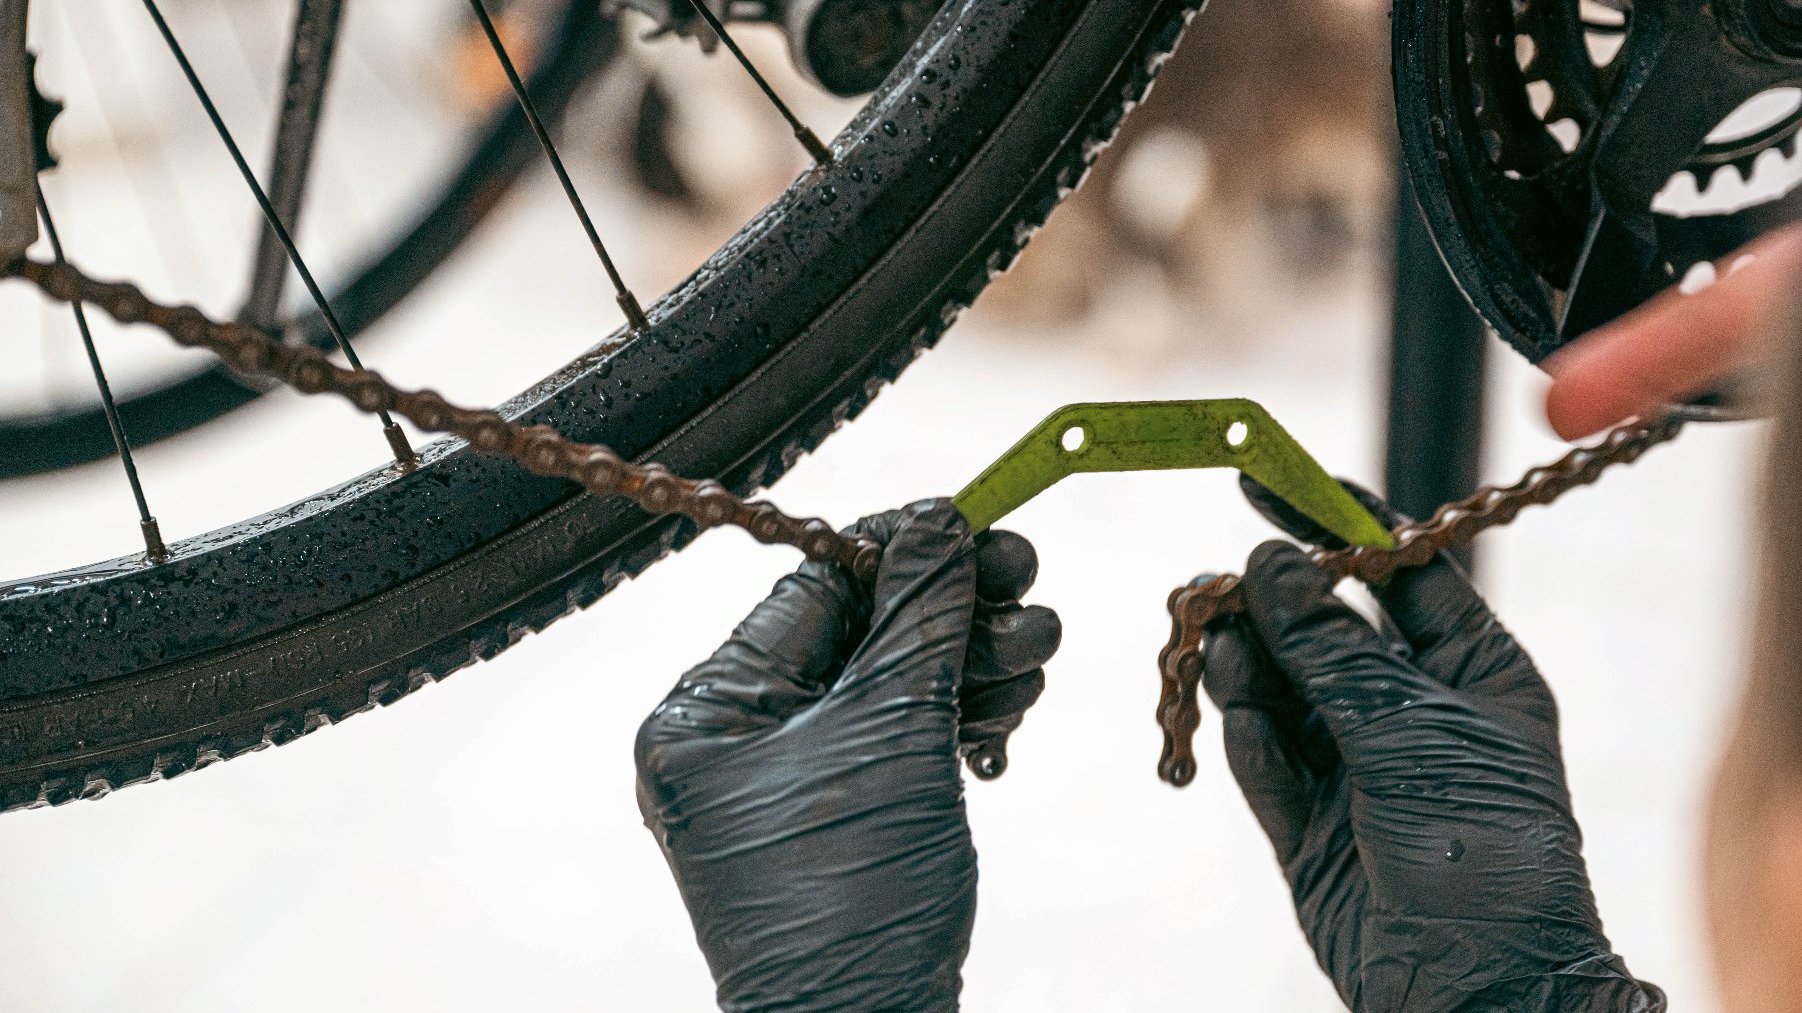 Na zdjęciu dwie dłonie w ciemnych rękawiczkach naprawiające łańcuch roweru